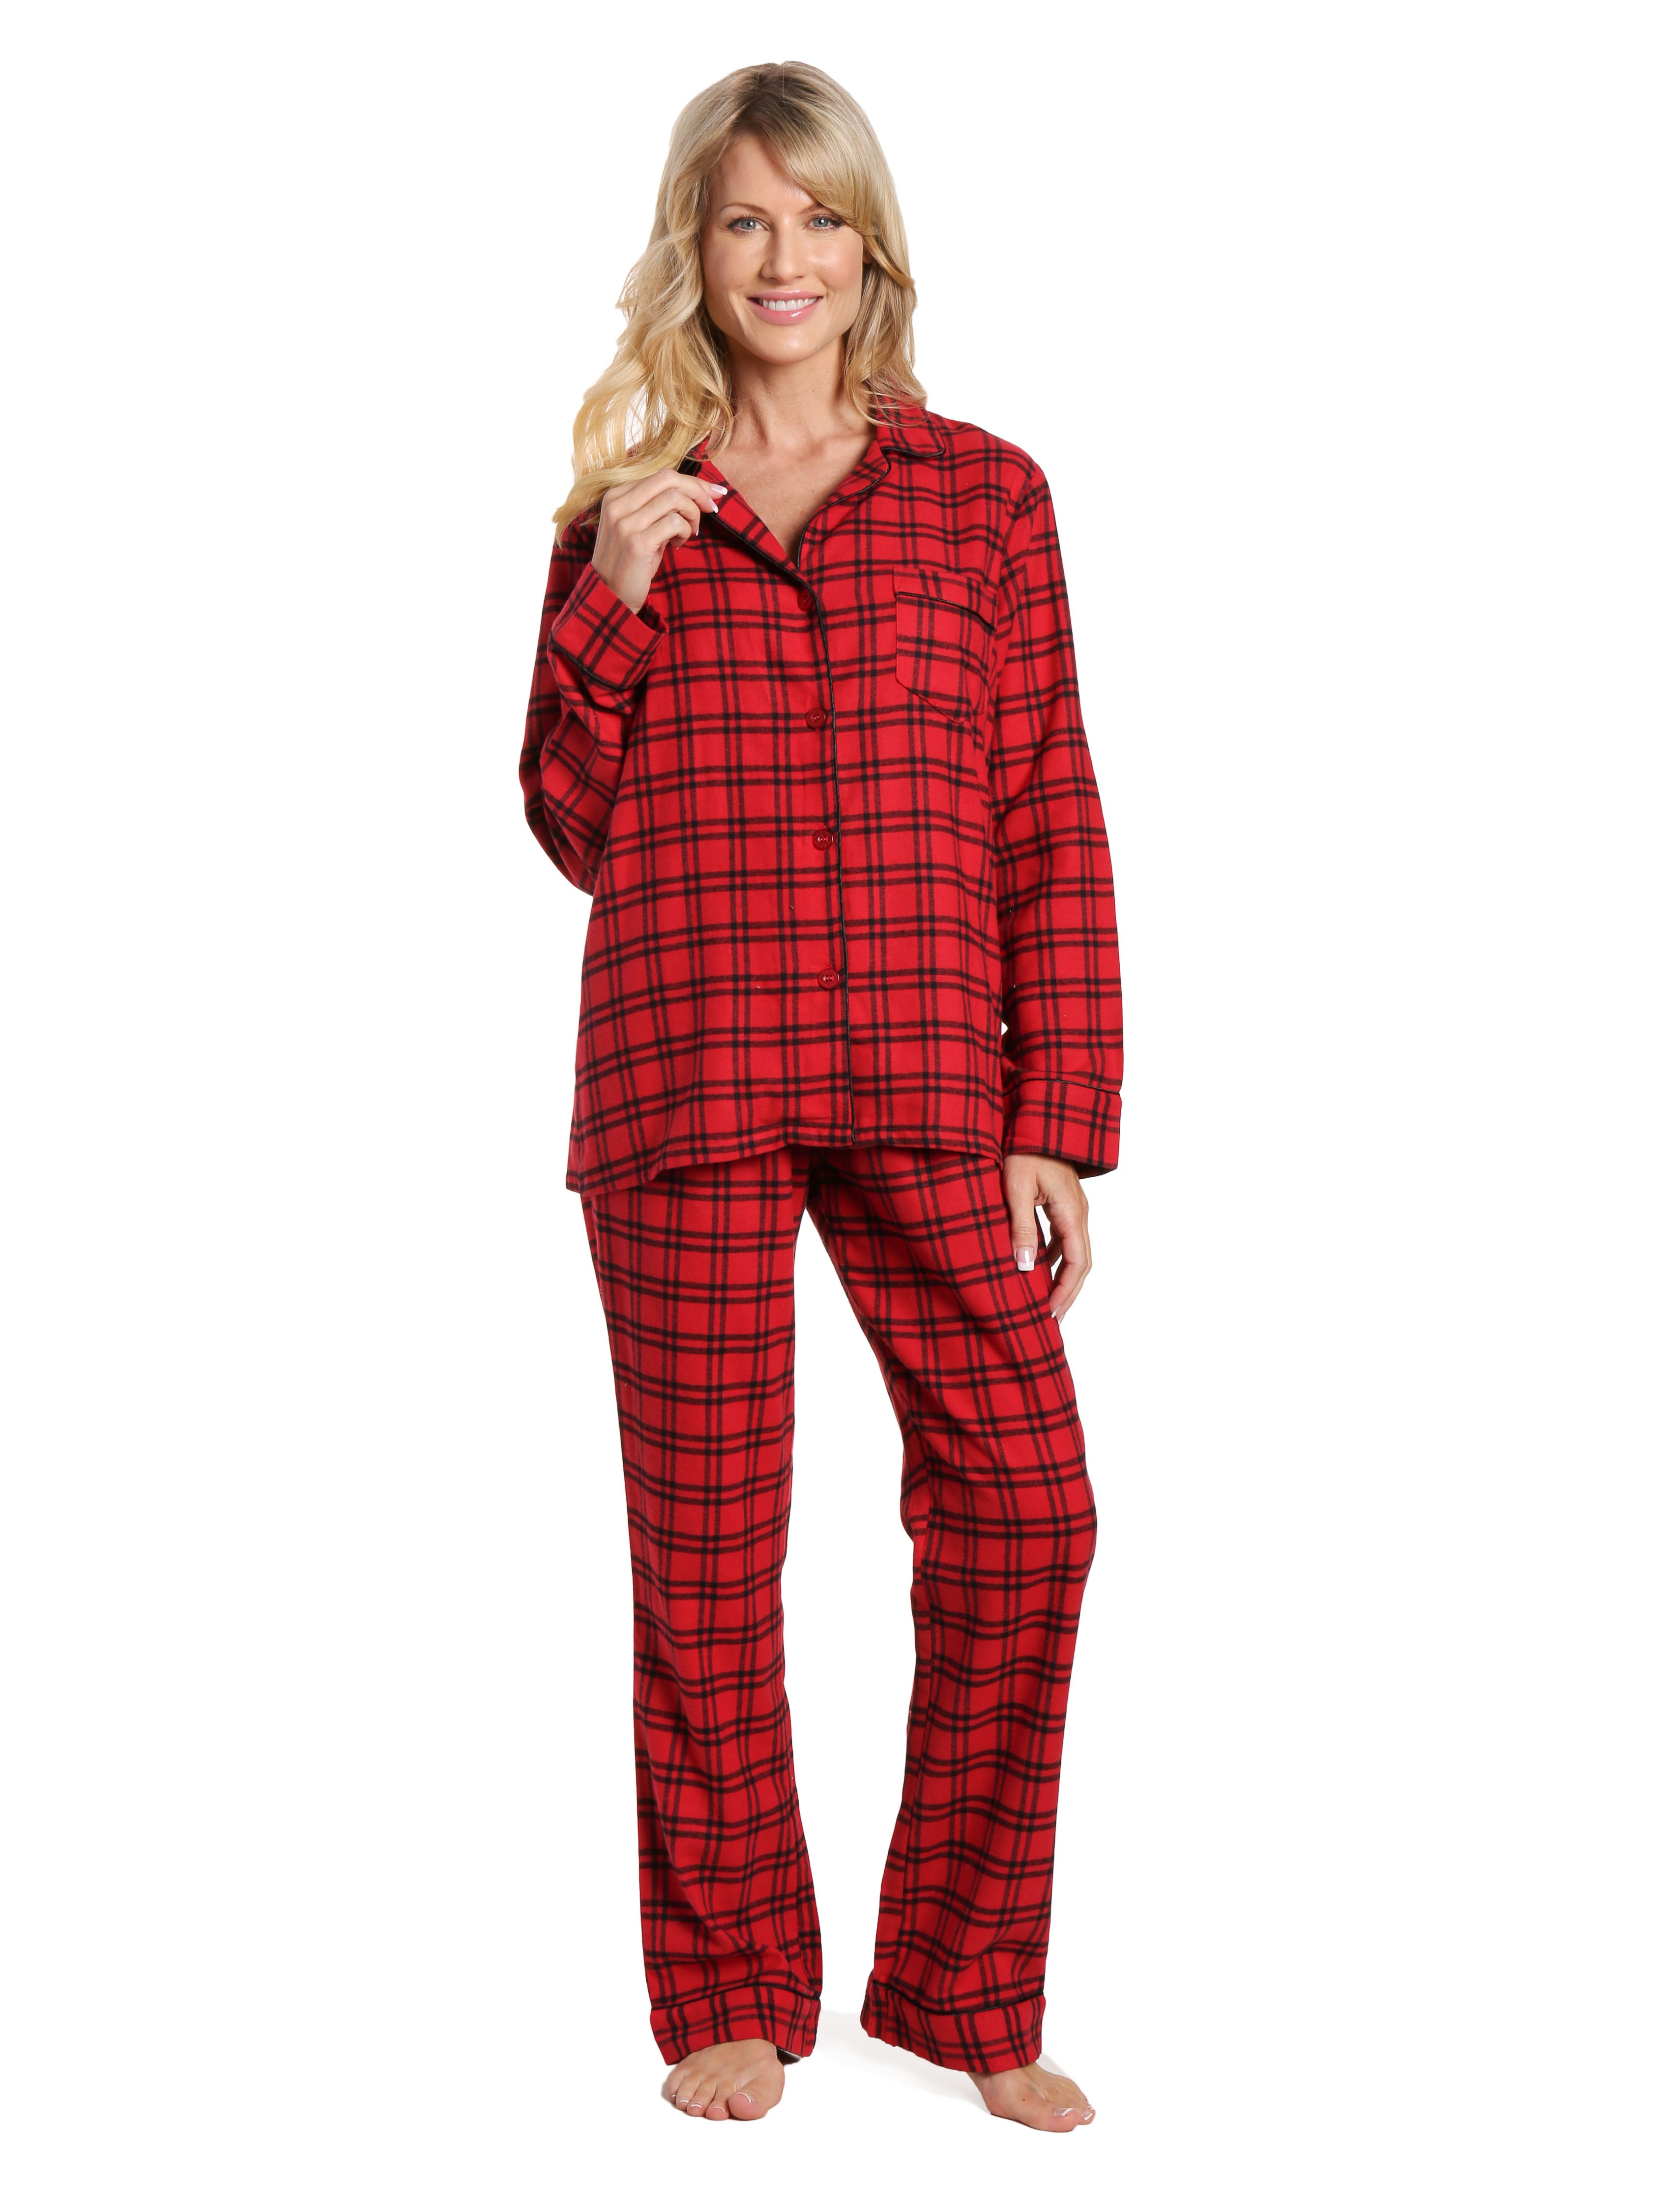 Womens 100% Cotton Lightweight Flannel Pajama Sleepwear Set - Checks Red-Black